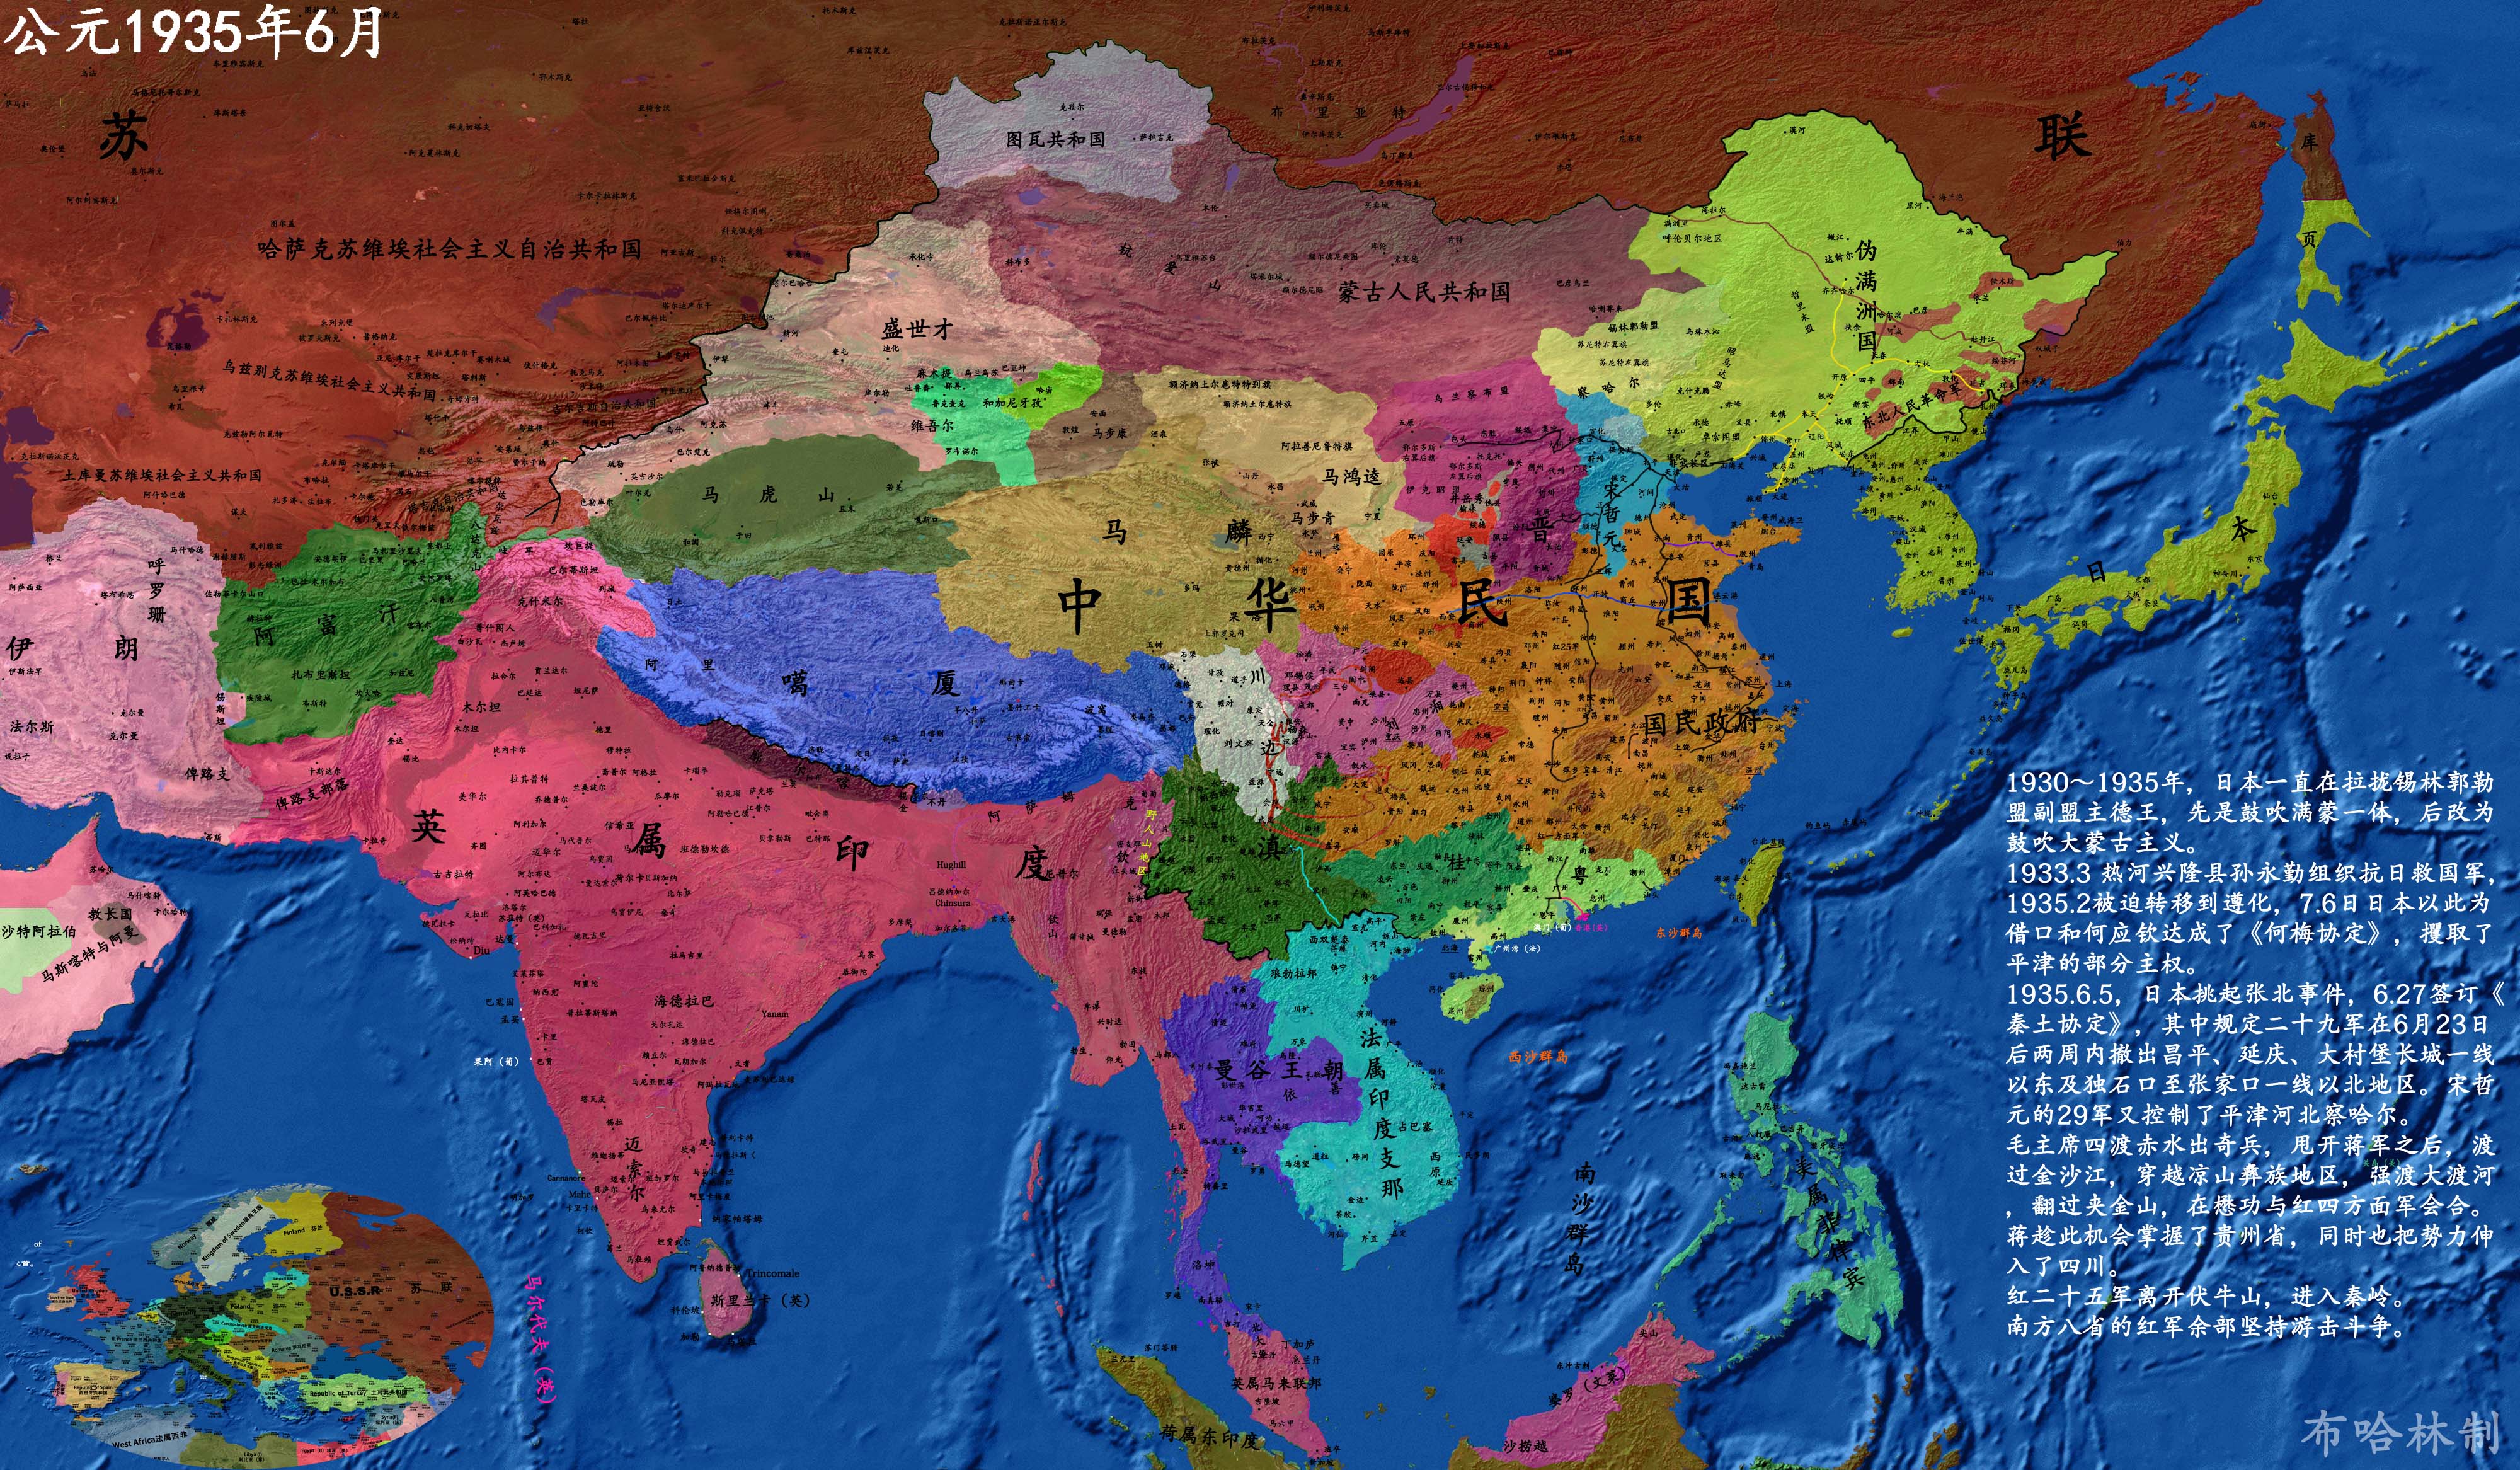 详细中国历史地图版本3--抗日战争(前半部分)